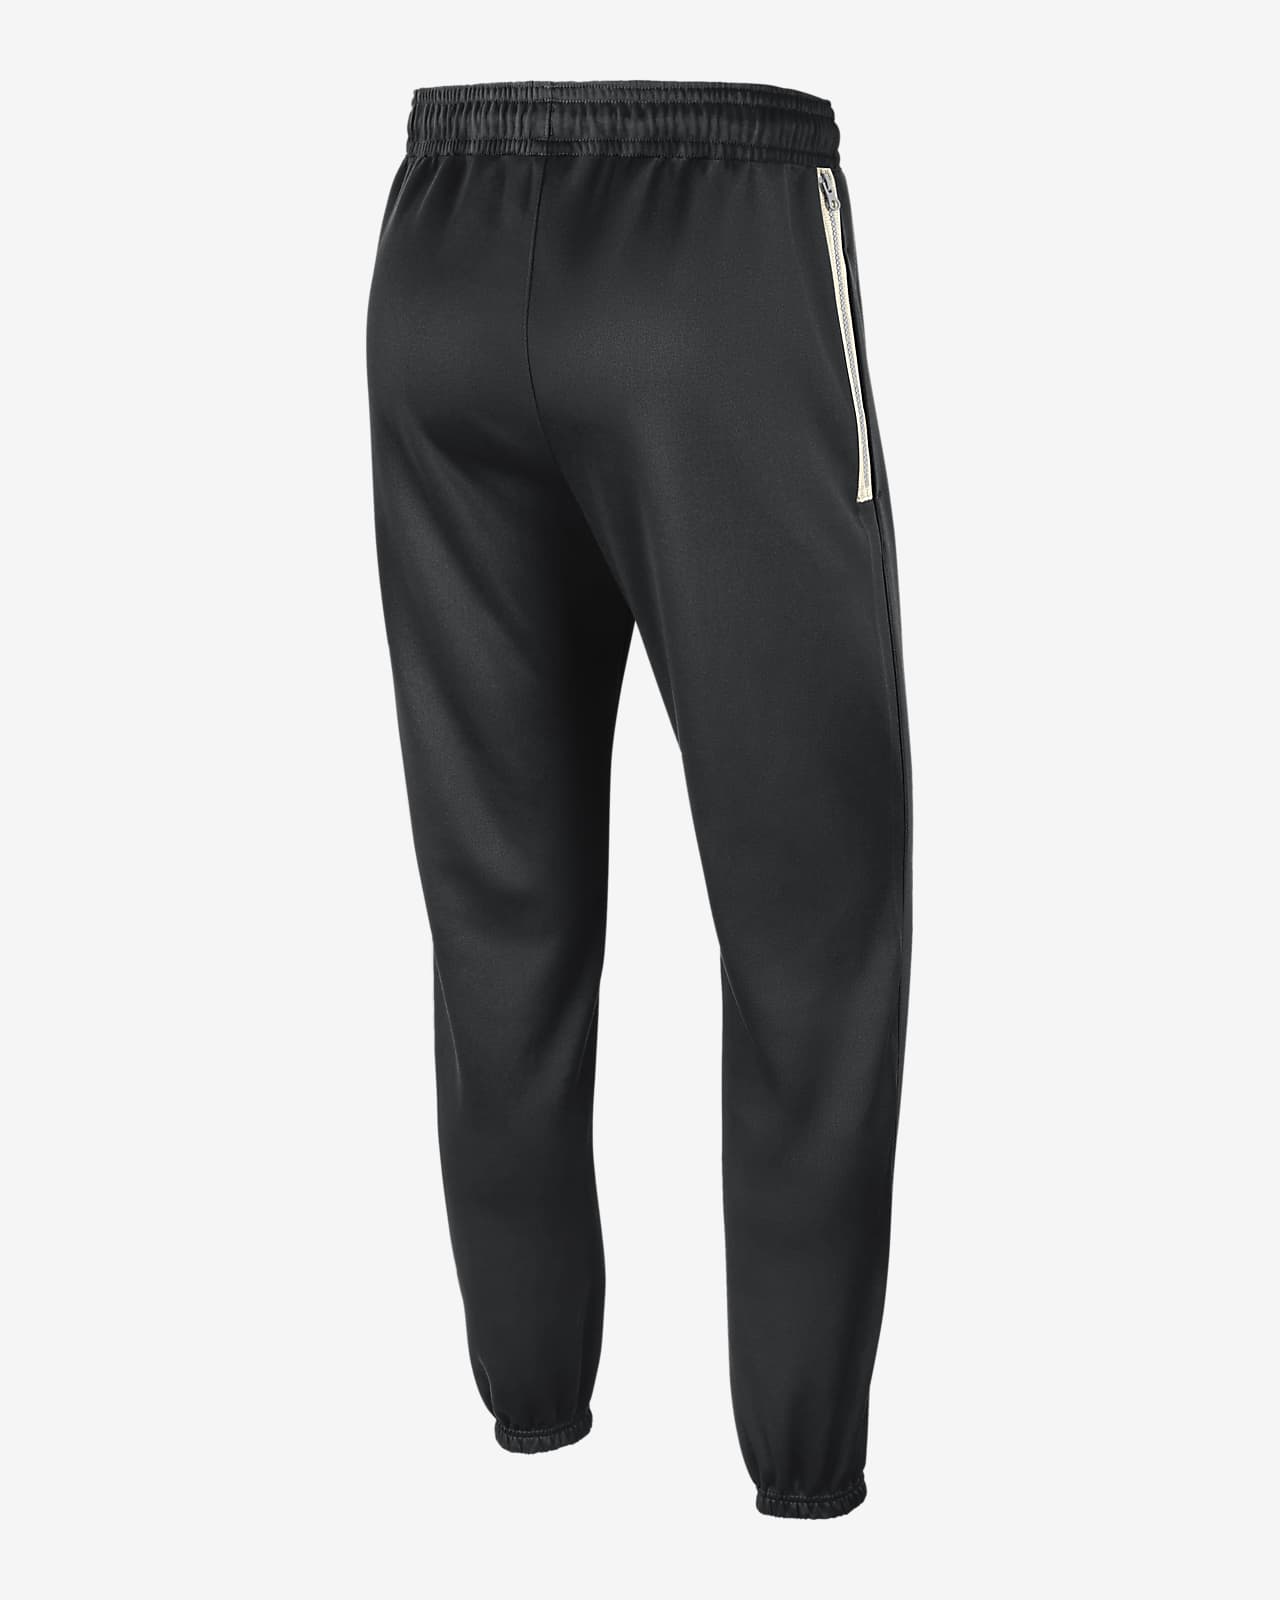 Pantalones Nike Dri-FIT de la NBA para hombre Nets Standard Issue. Nike.com